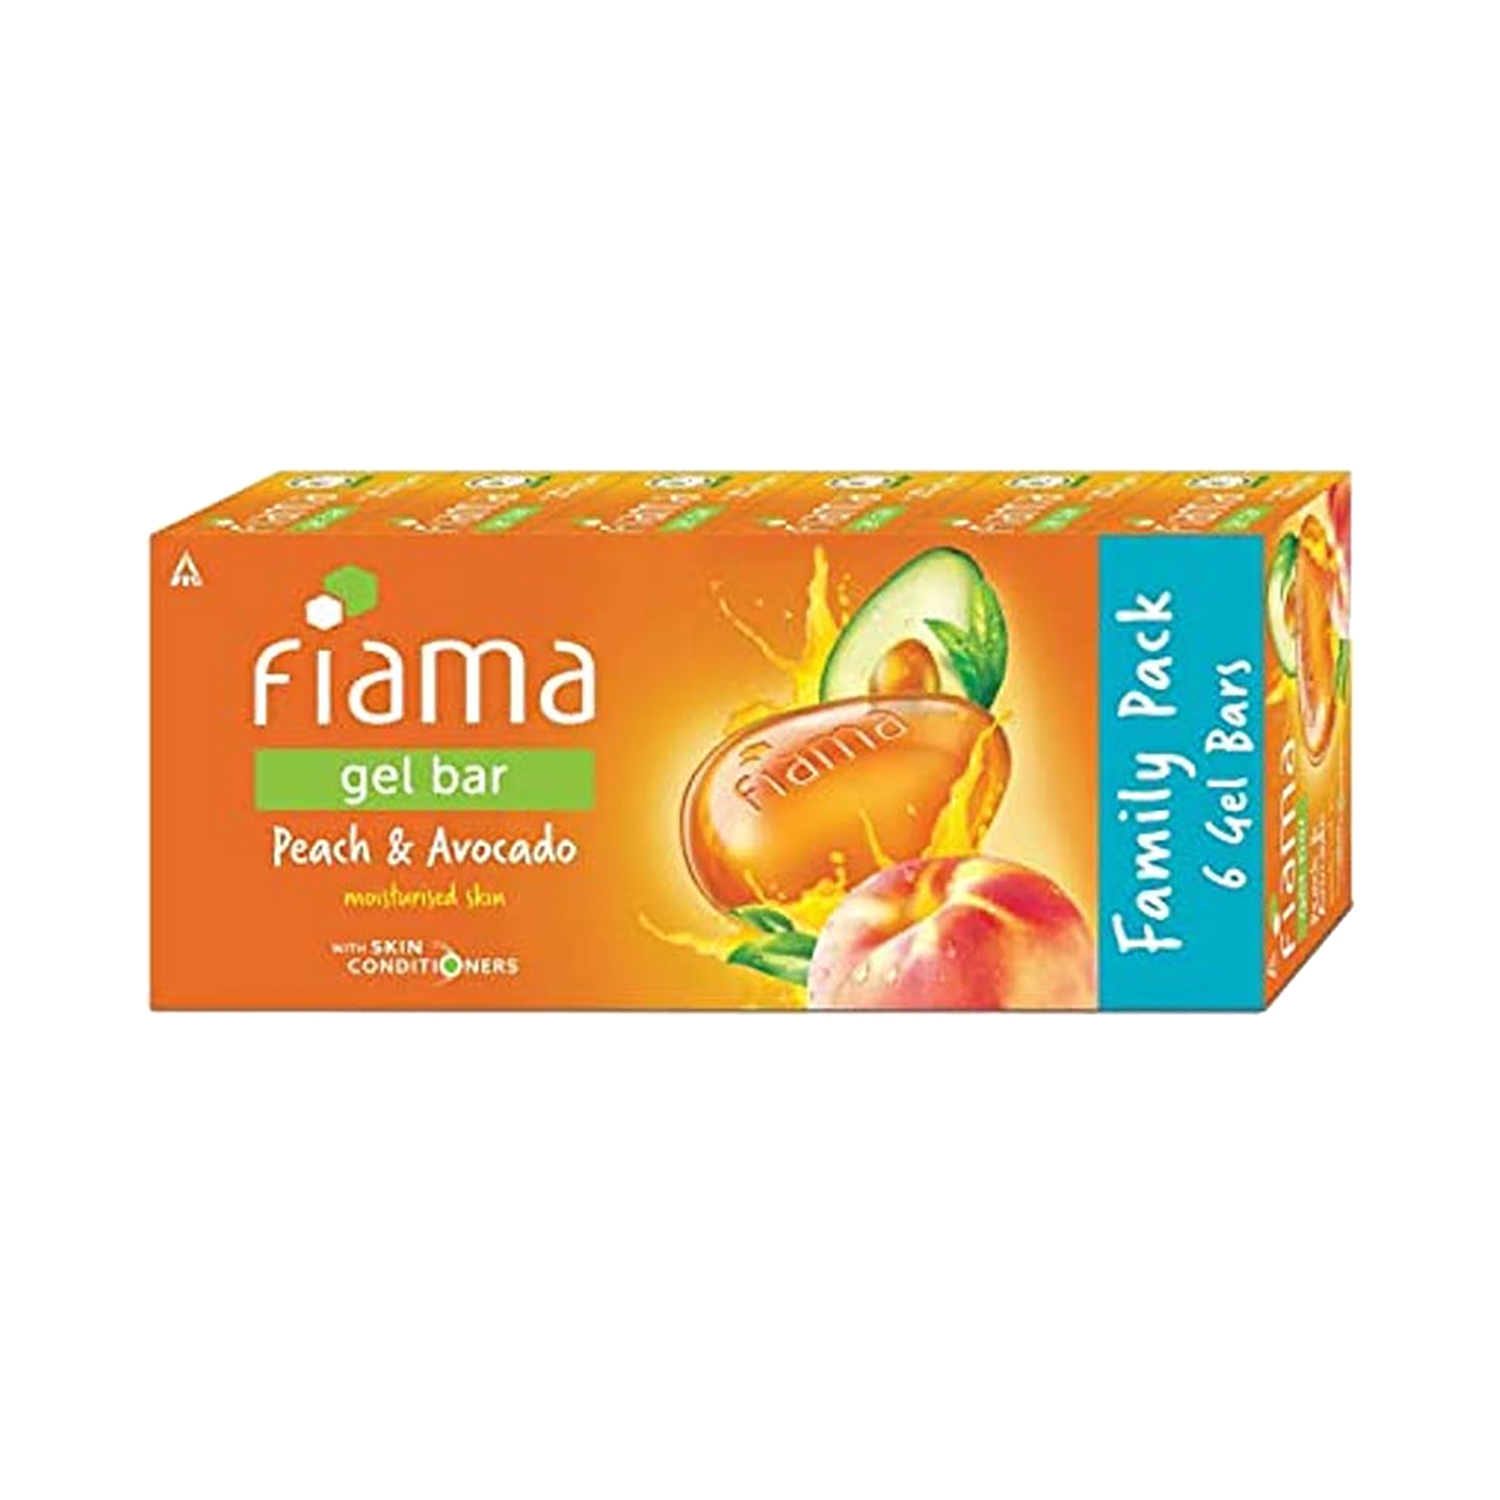 Fiama | Fiama Peach And Avocado Moisturized Skin Gel Bar With Skin Conditioners - (6Pcs)